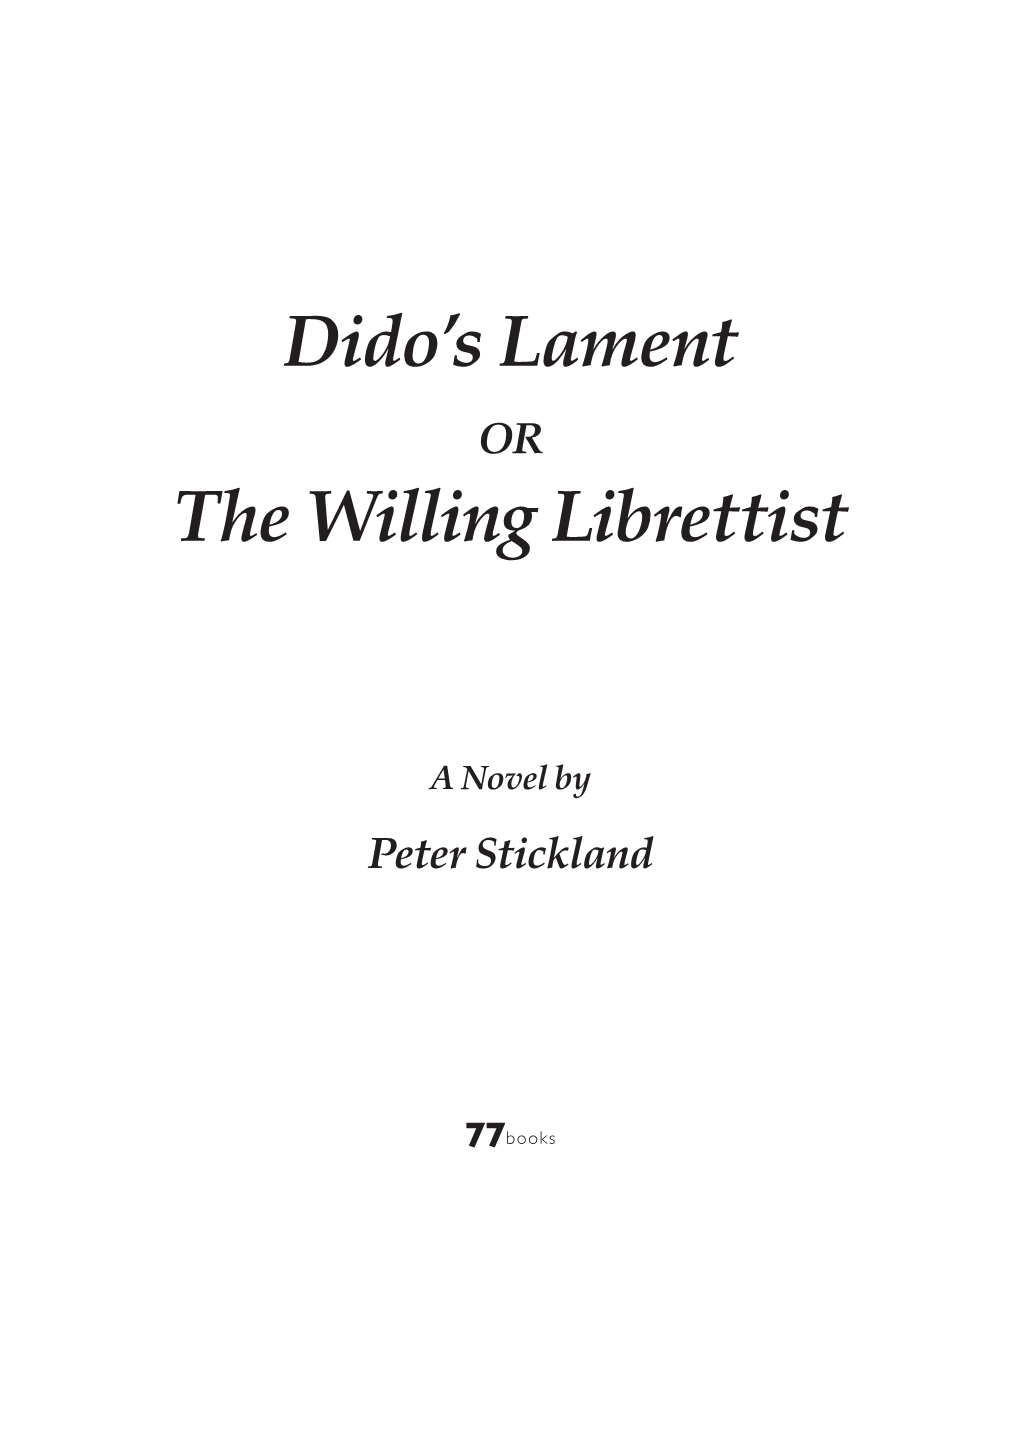 Dido's Lament the Willing Librettist